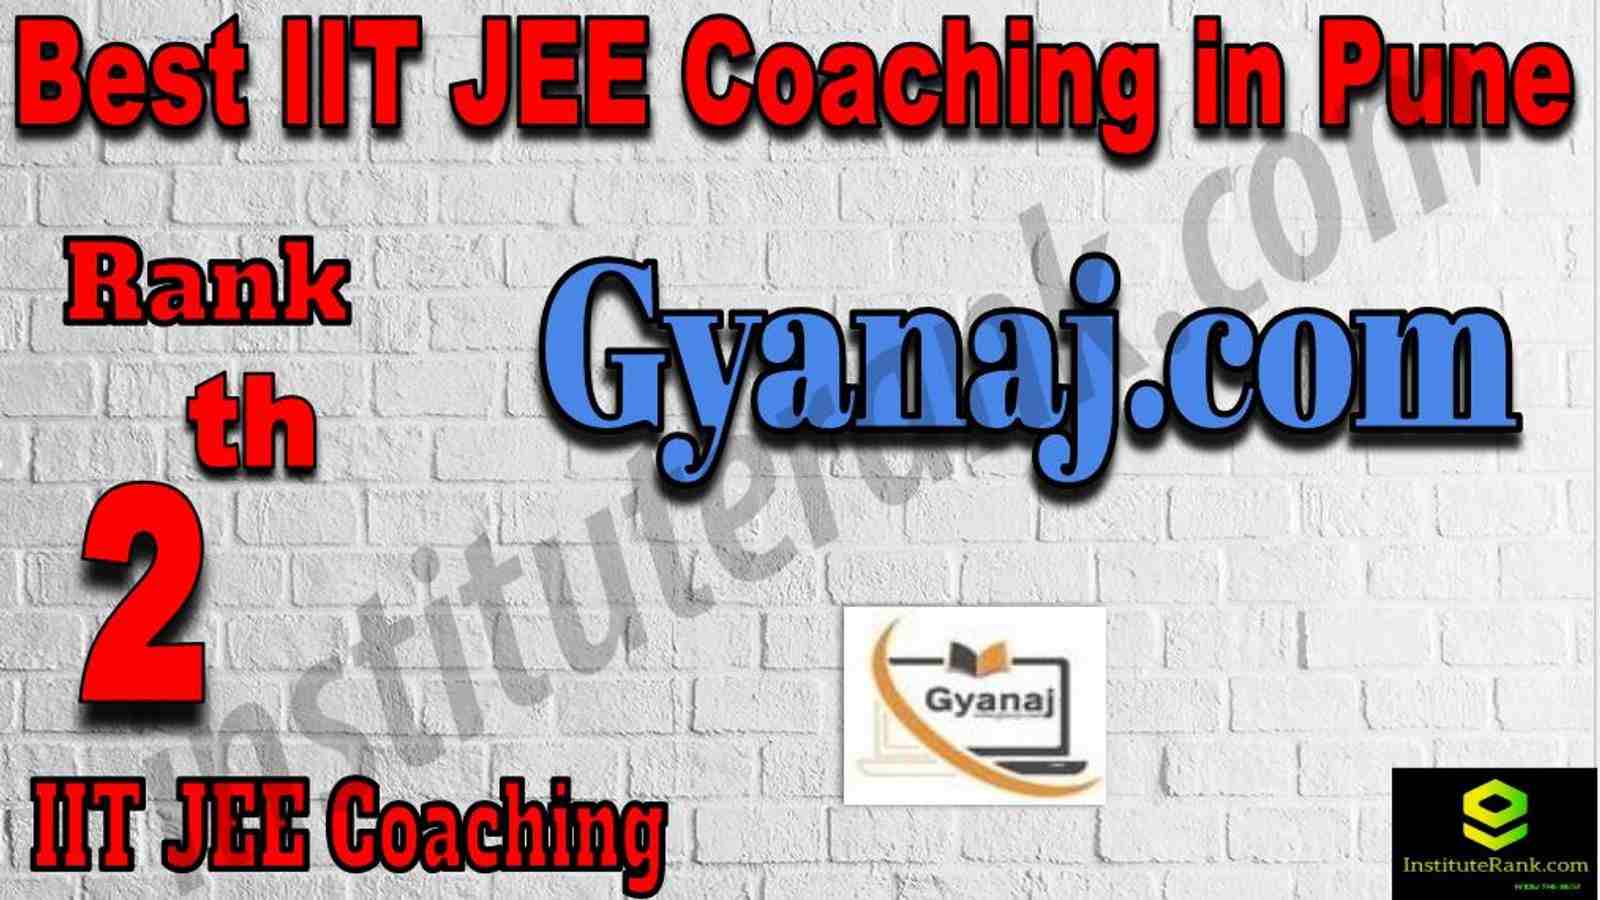 2nd Best IIT JEE Coaching in Pune